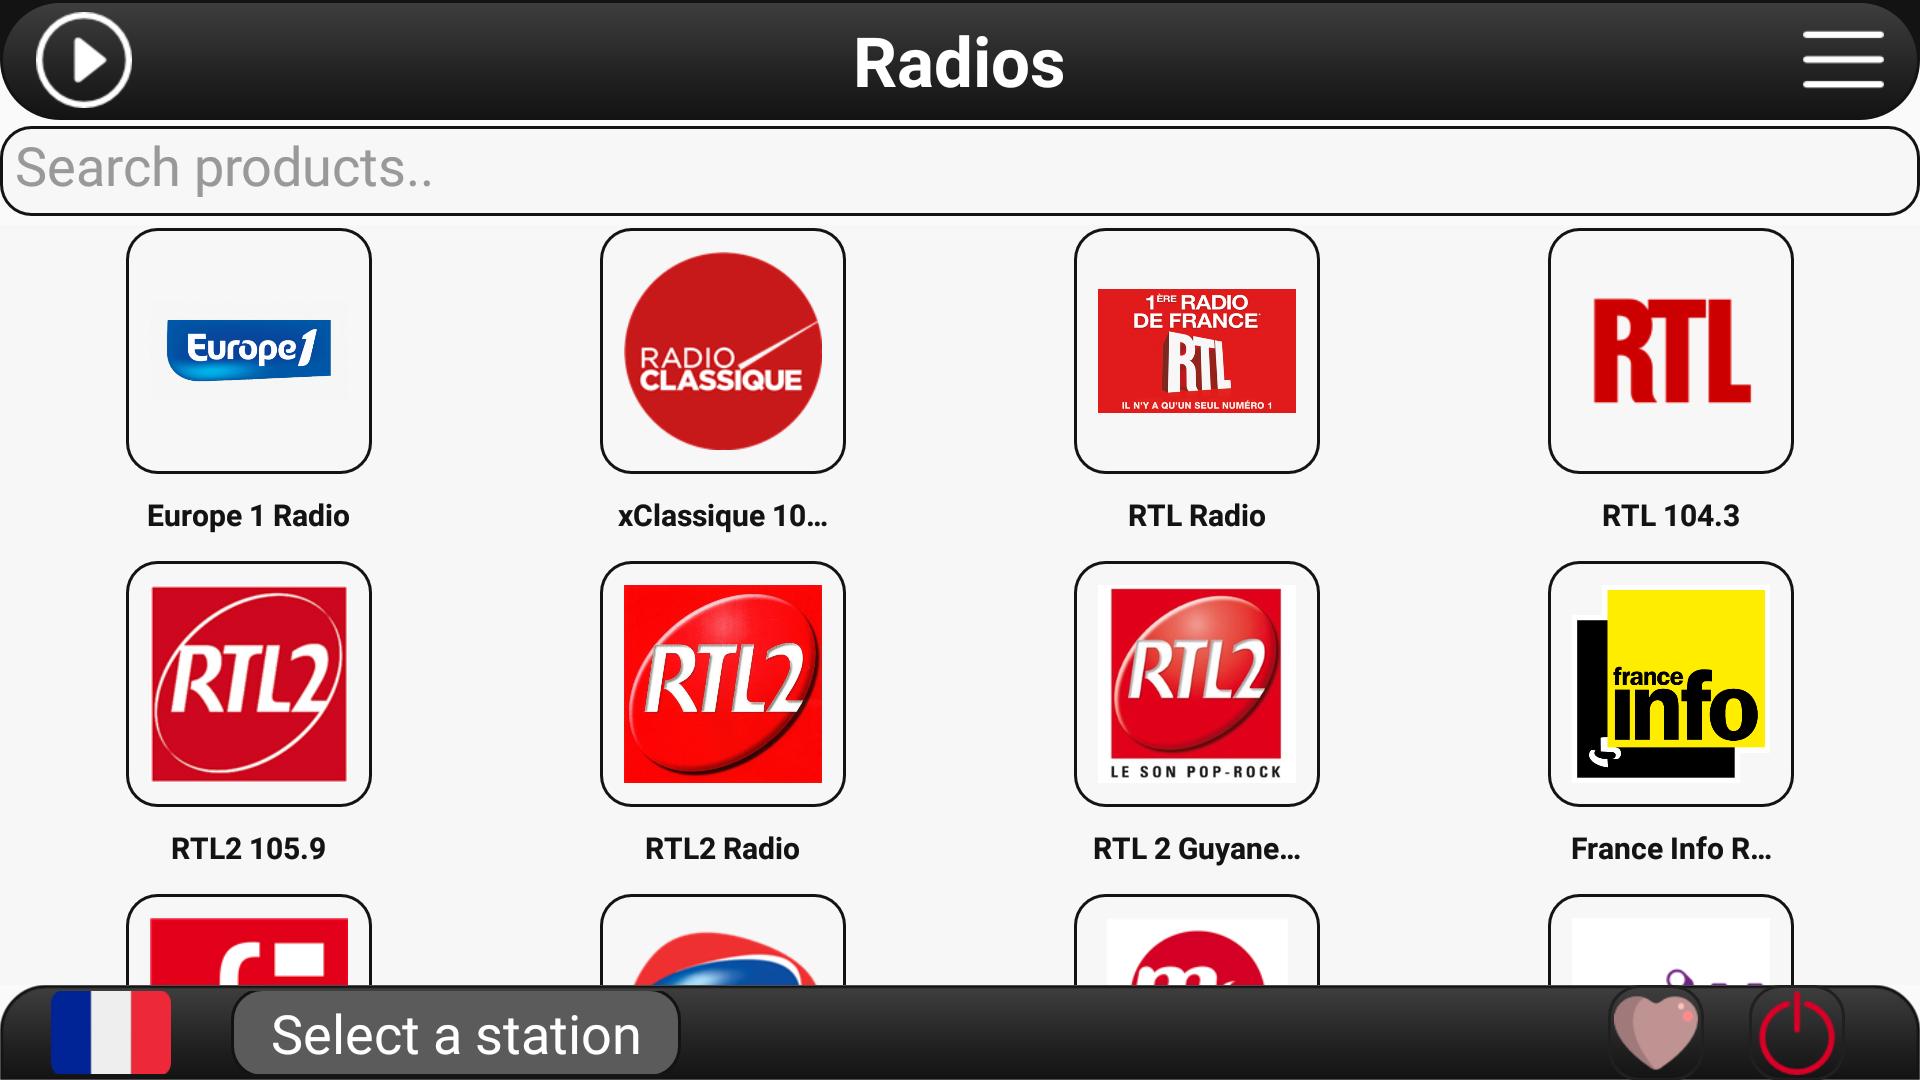 Поток фм радио. RTL радио. Радио богатырь ФМ. Radio Europe 1. Хф радио ФМ.